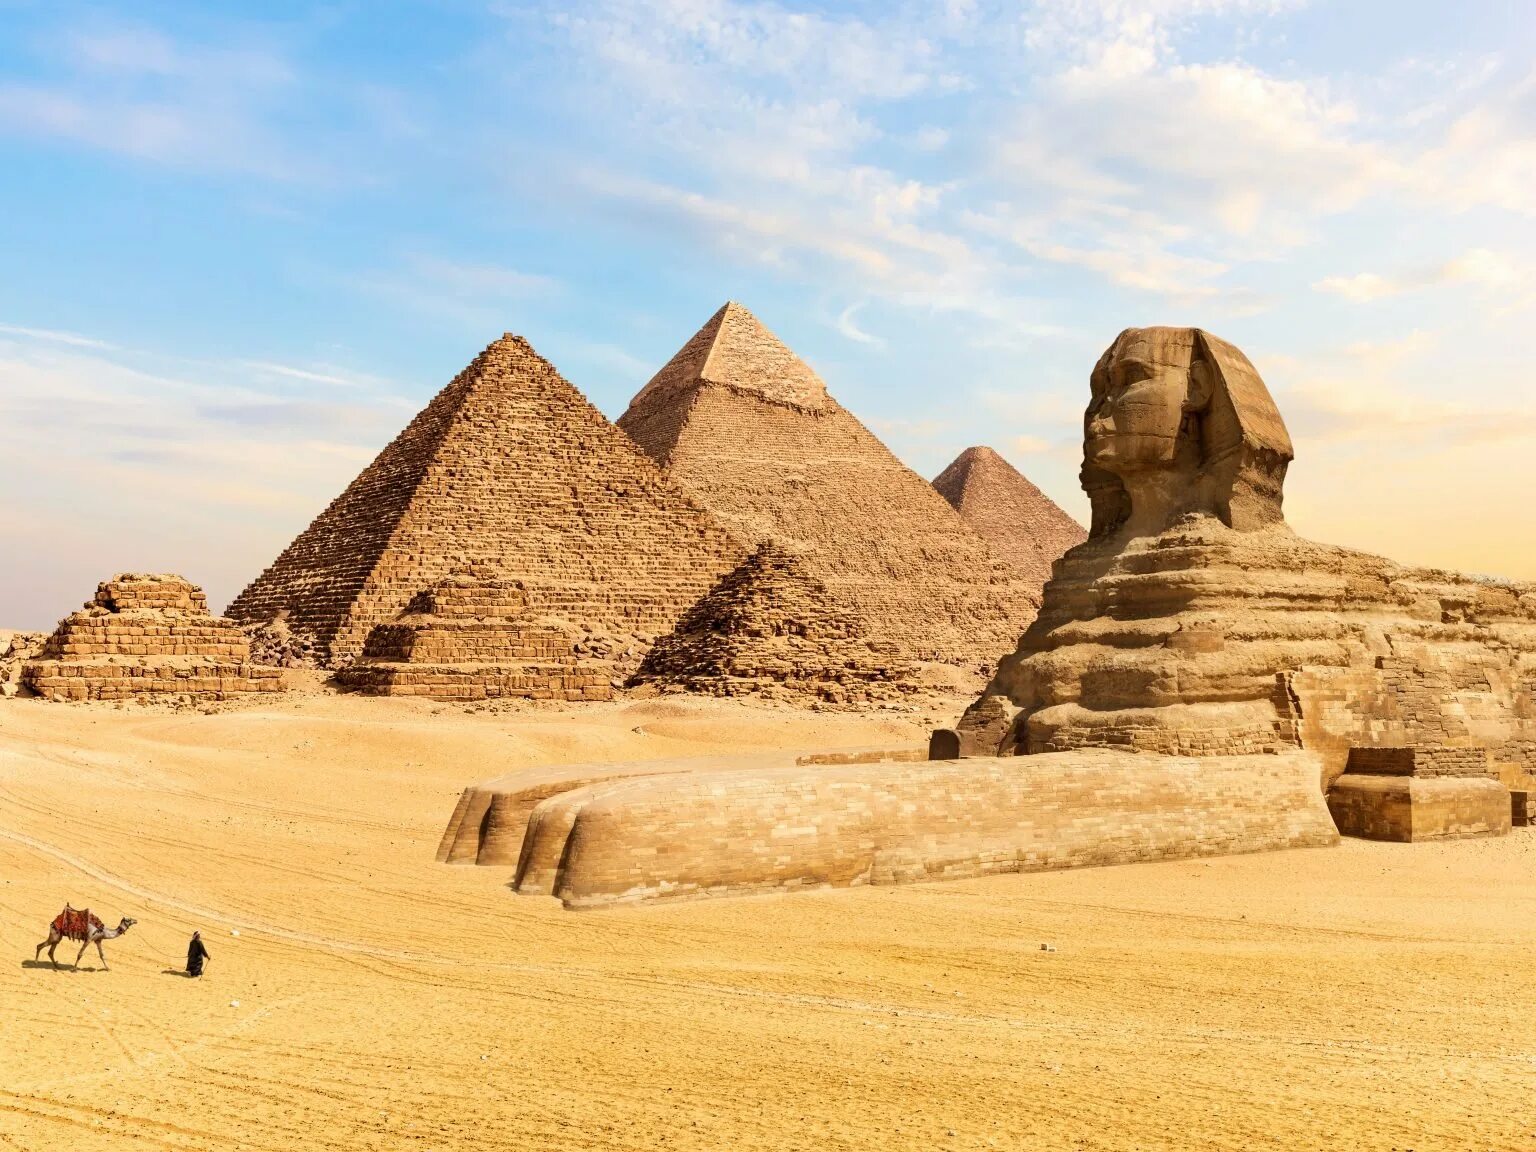 Misr piramidalari haqida. Пирамиды Гизы (Каир). Пирамида Гиза Египет. Пирамида Хеопса Каир. Пирамиды Гизы и сфинкс в Египте.